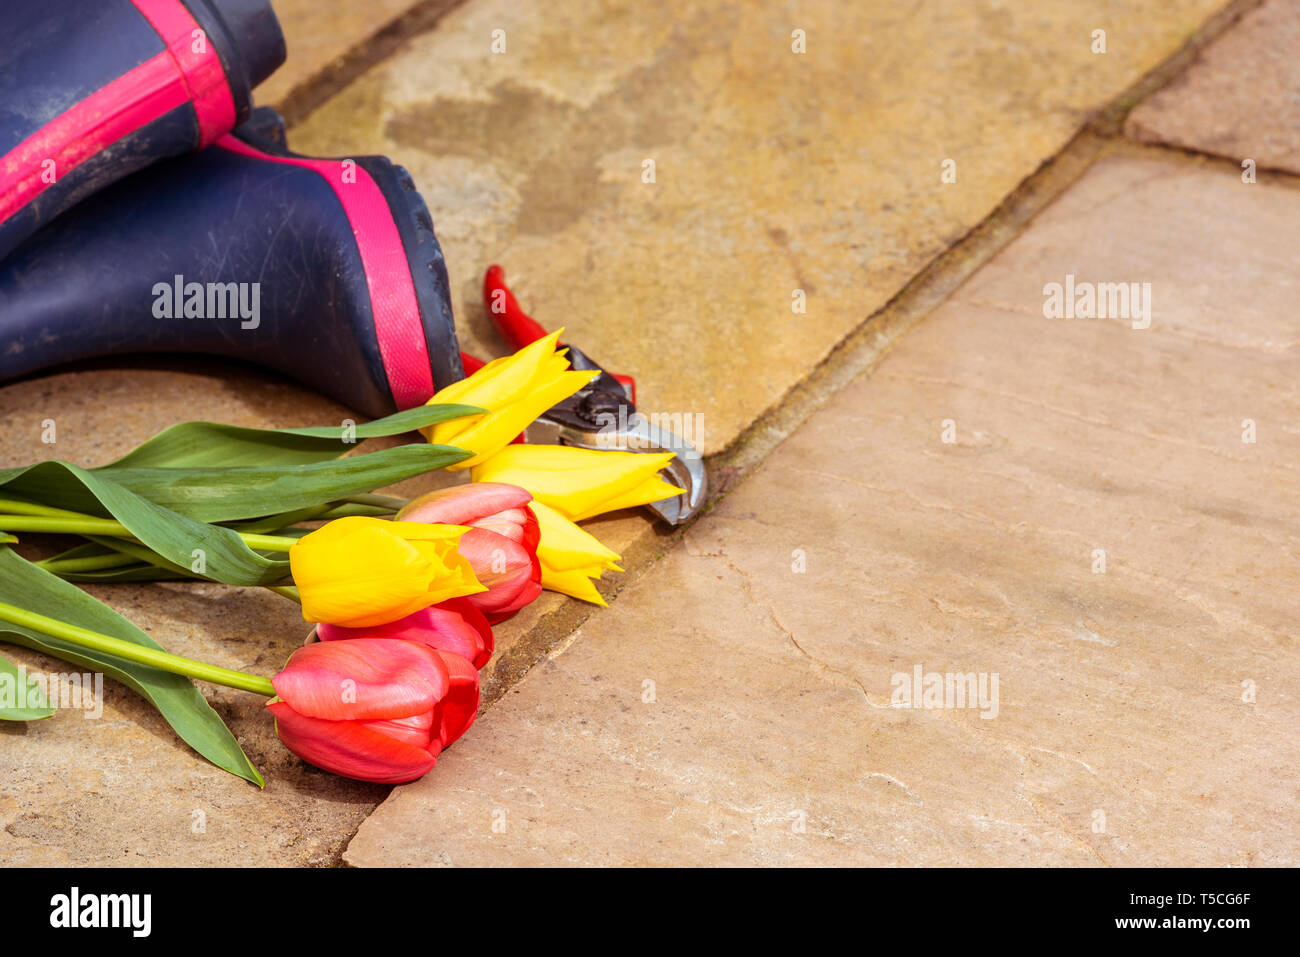 Paar blaue Gummistiefel auf einem Stein Terrasse. Meine Damen regen Stiefel. Frühling Blumen und Blüten, geschnitten, gelbe und rote Tulpen, mit der Gartenschere. Stockfoto